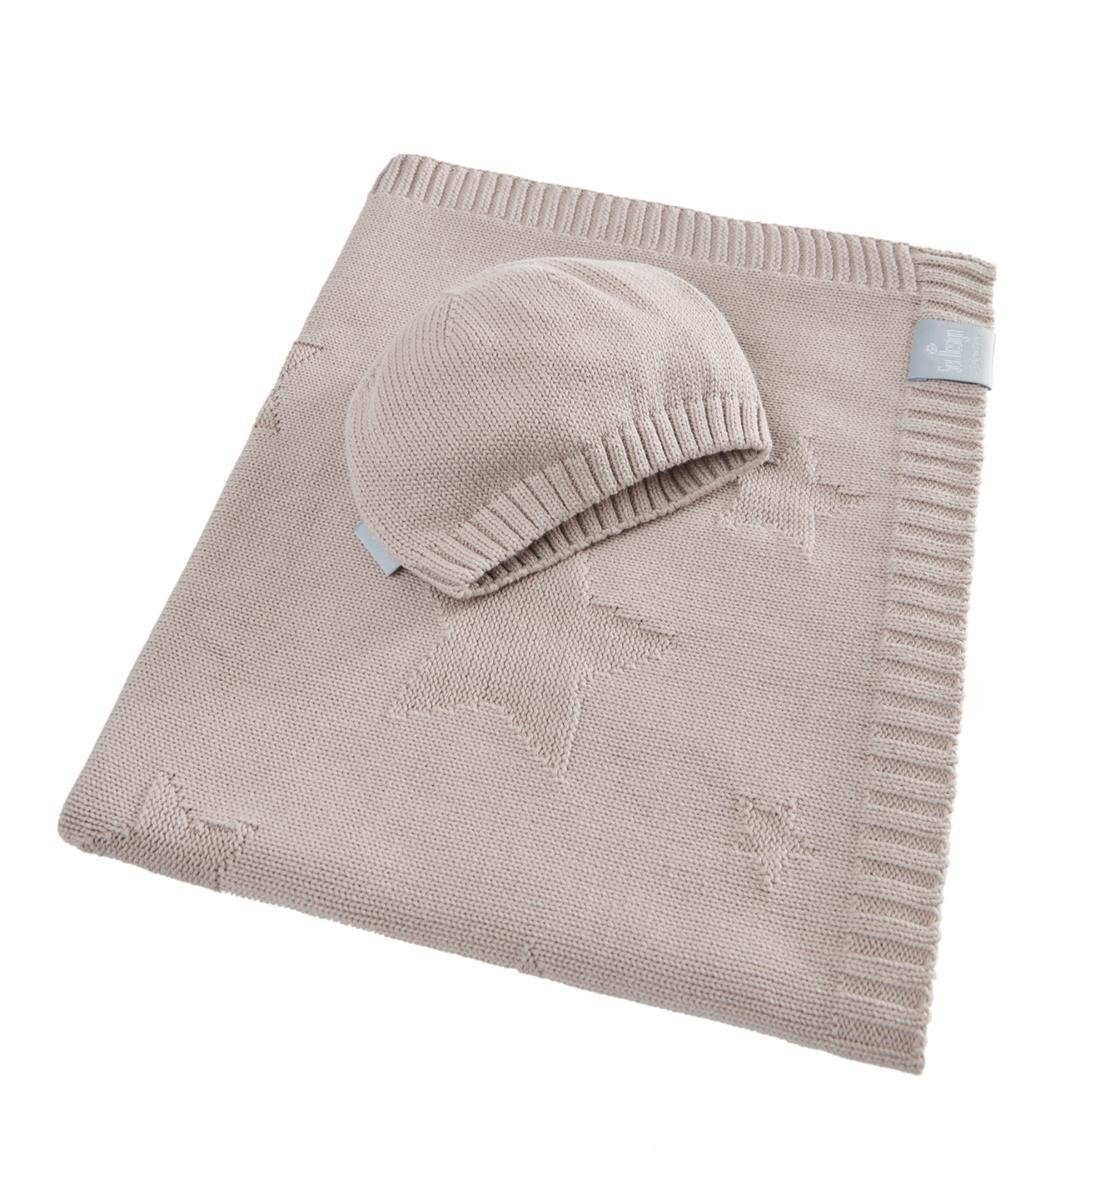 Babydecke 90x70cm - Strickdecke aus 100% BIO Baumwolle, SEI Design, inkl. Geschenkverpackung Shifting Sand